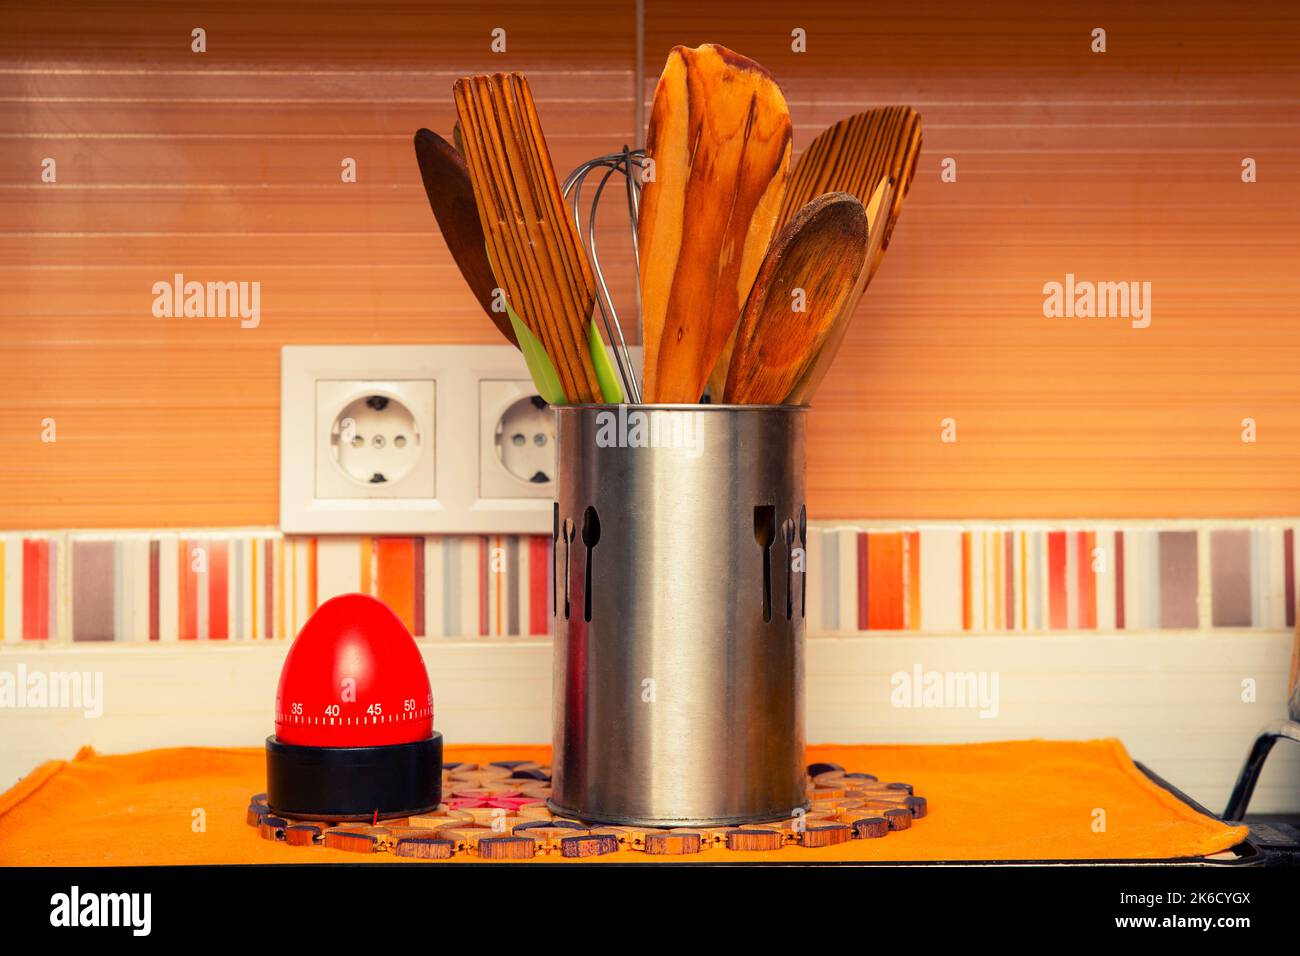 utensili da cucina in legno in un contenitore di metallo accanto a un timer Foto Stock